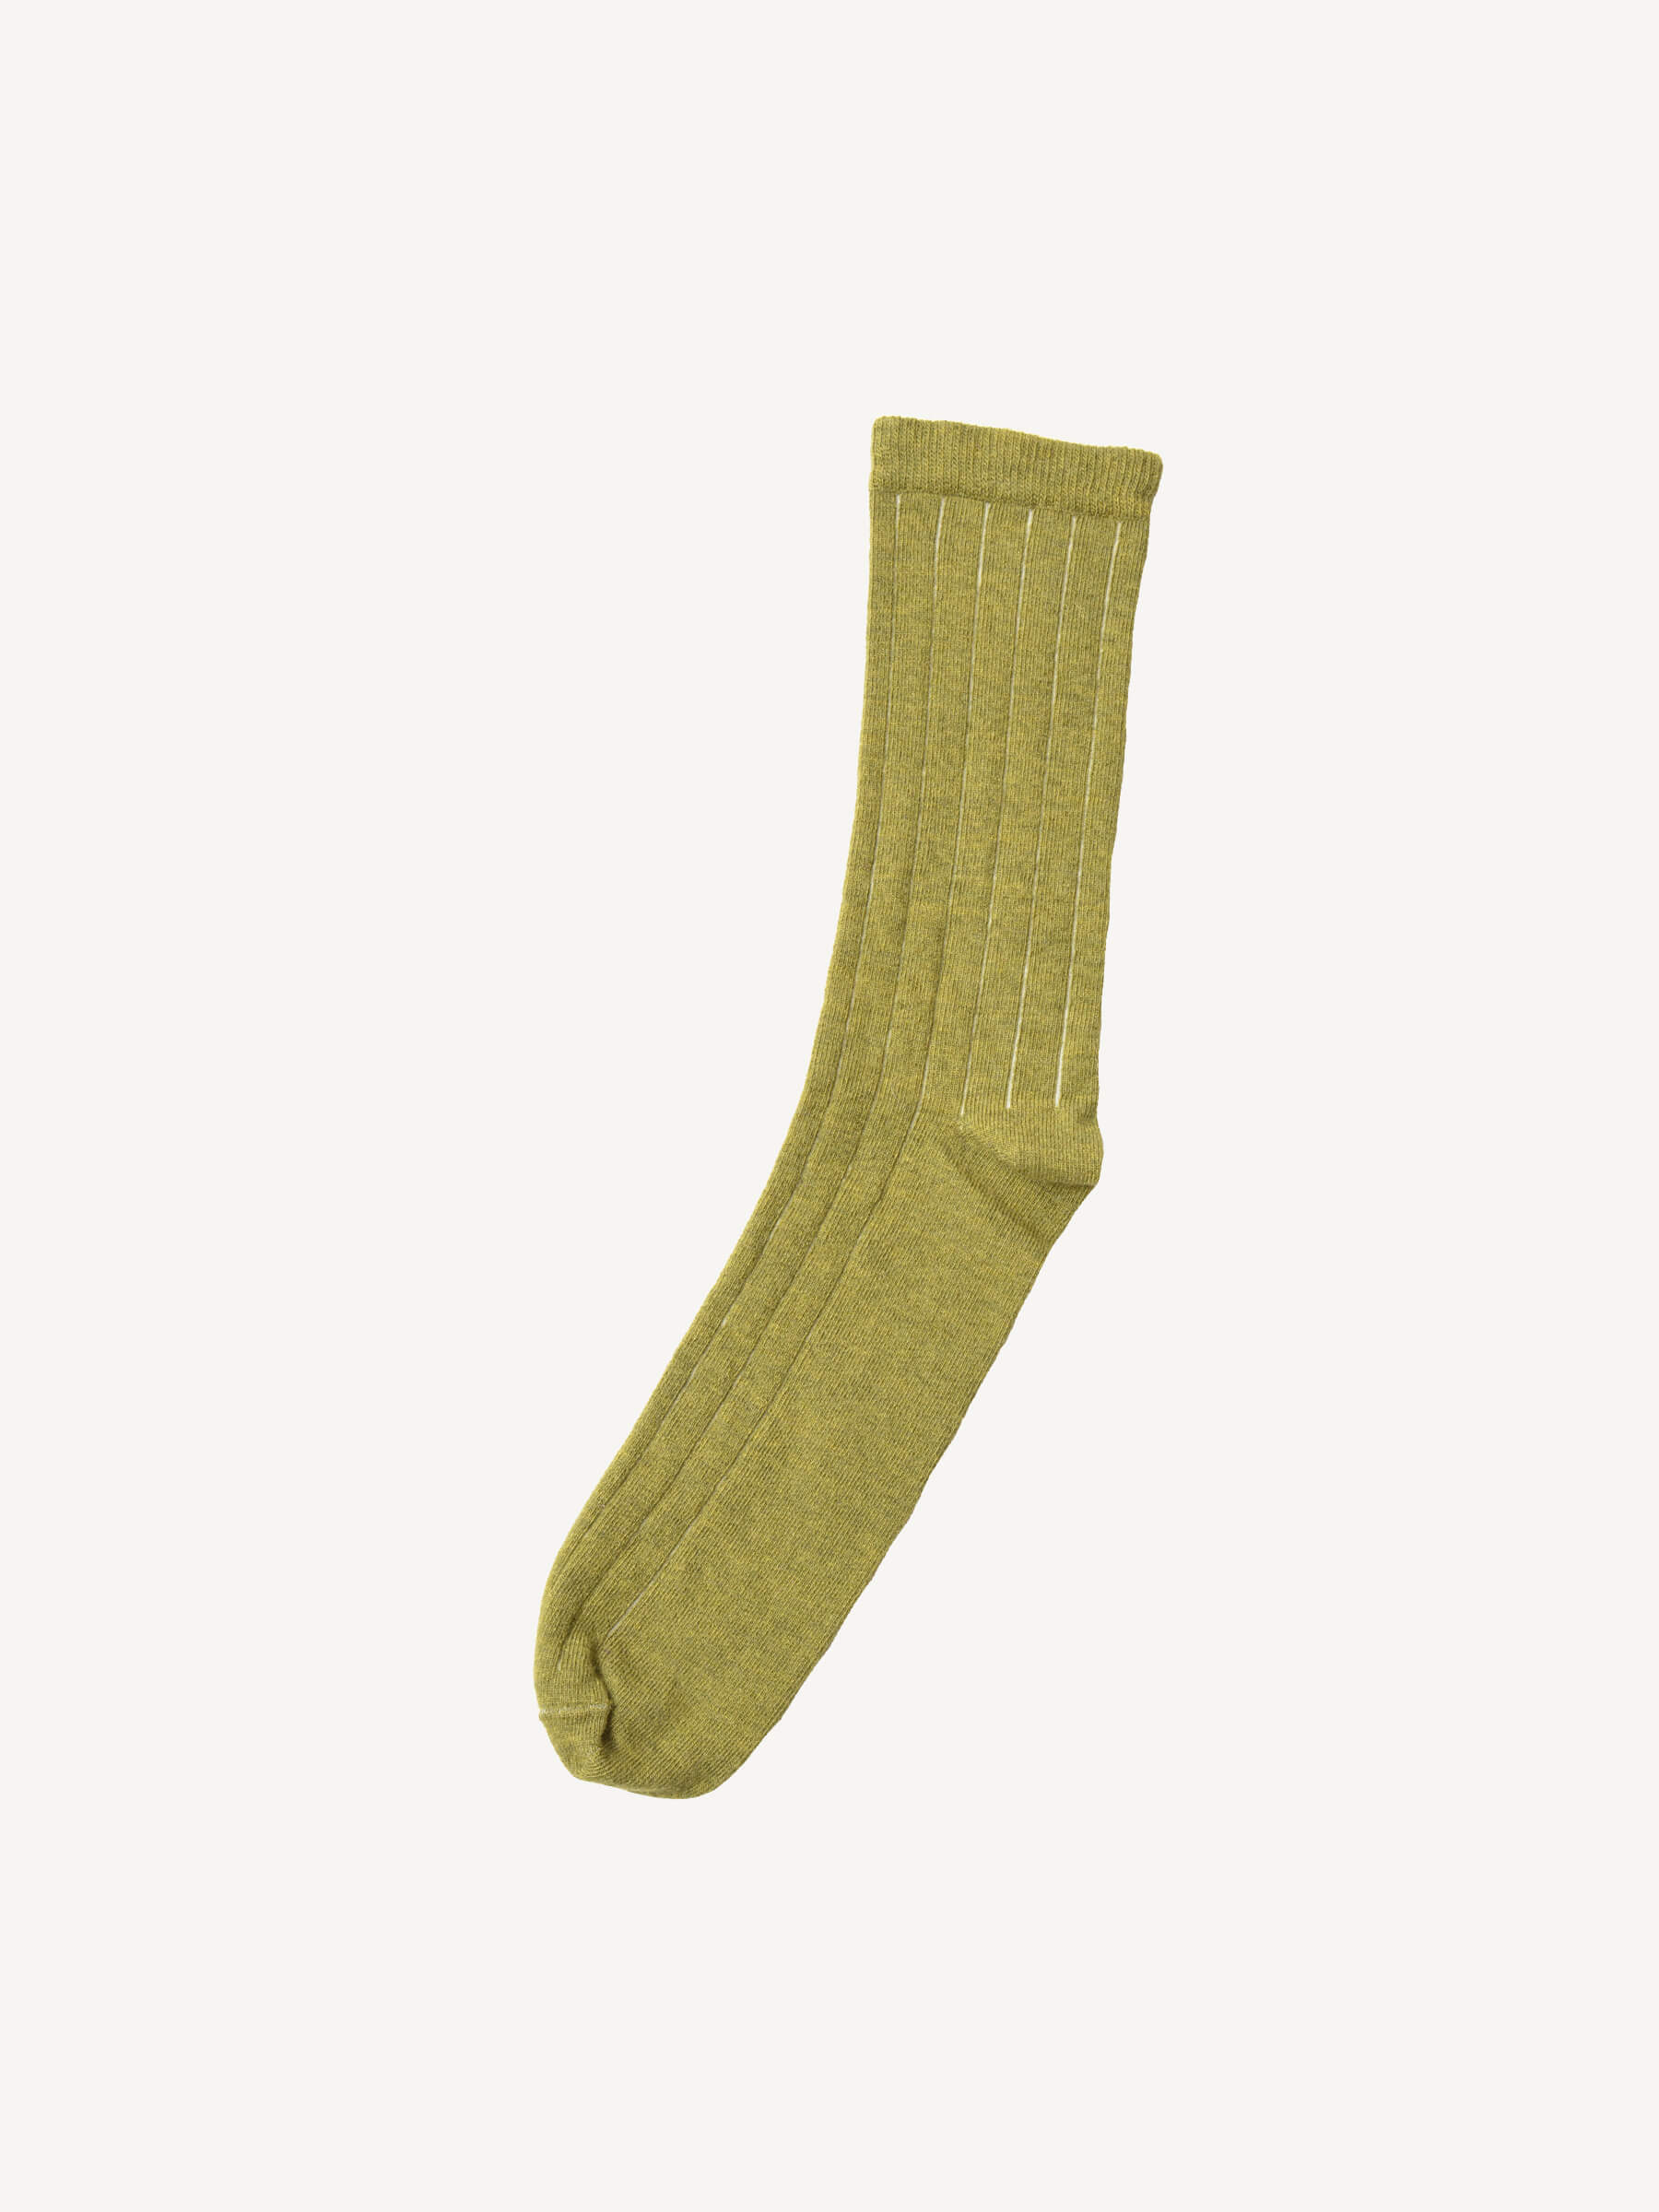 Merino Wool Socks - Explore - Grown-Ups